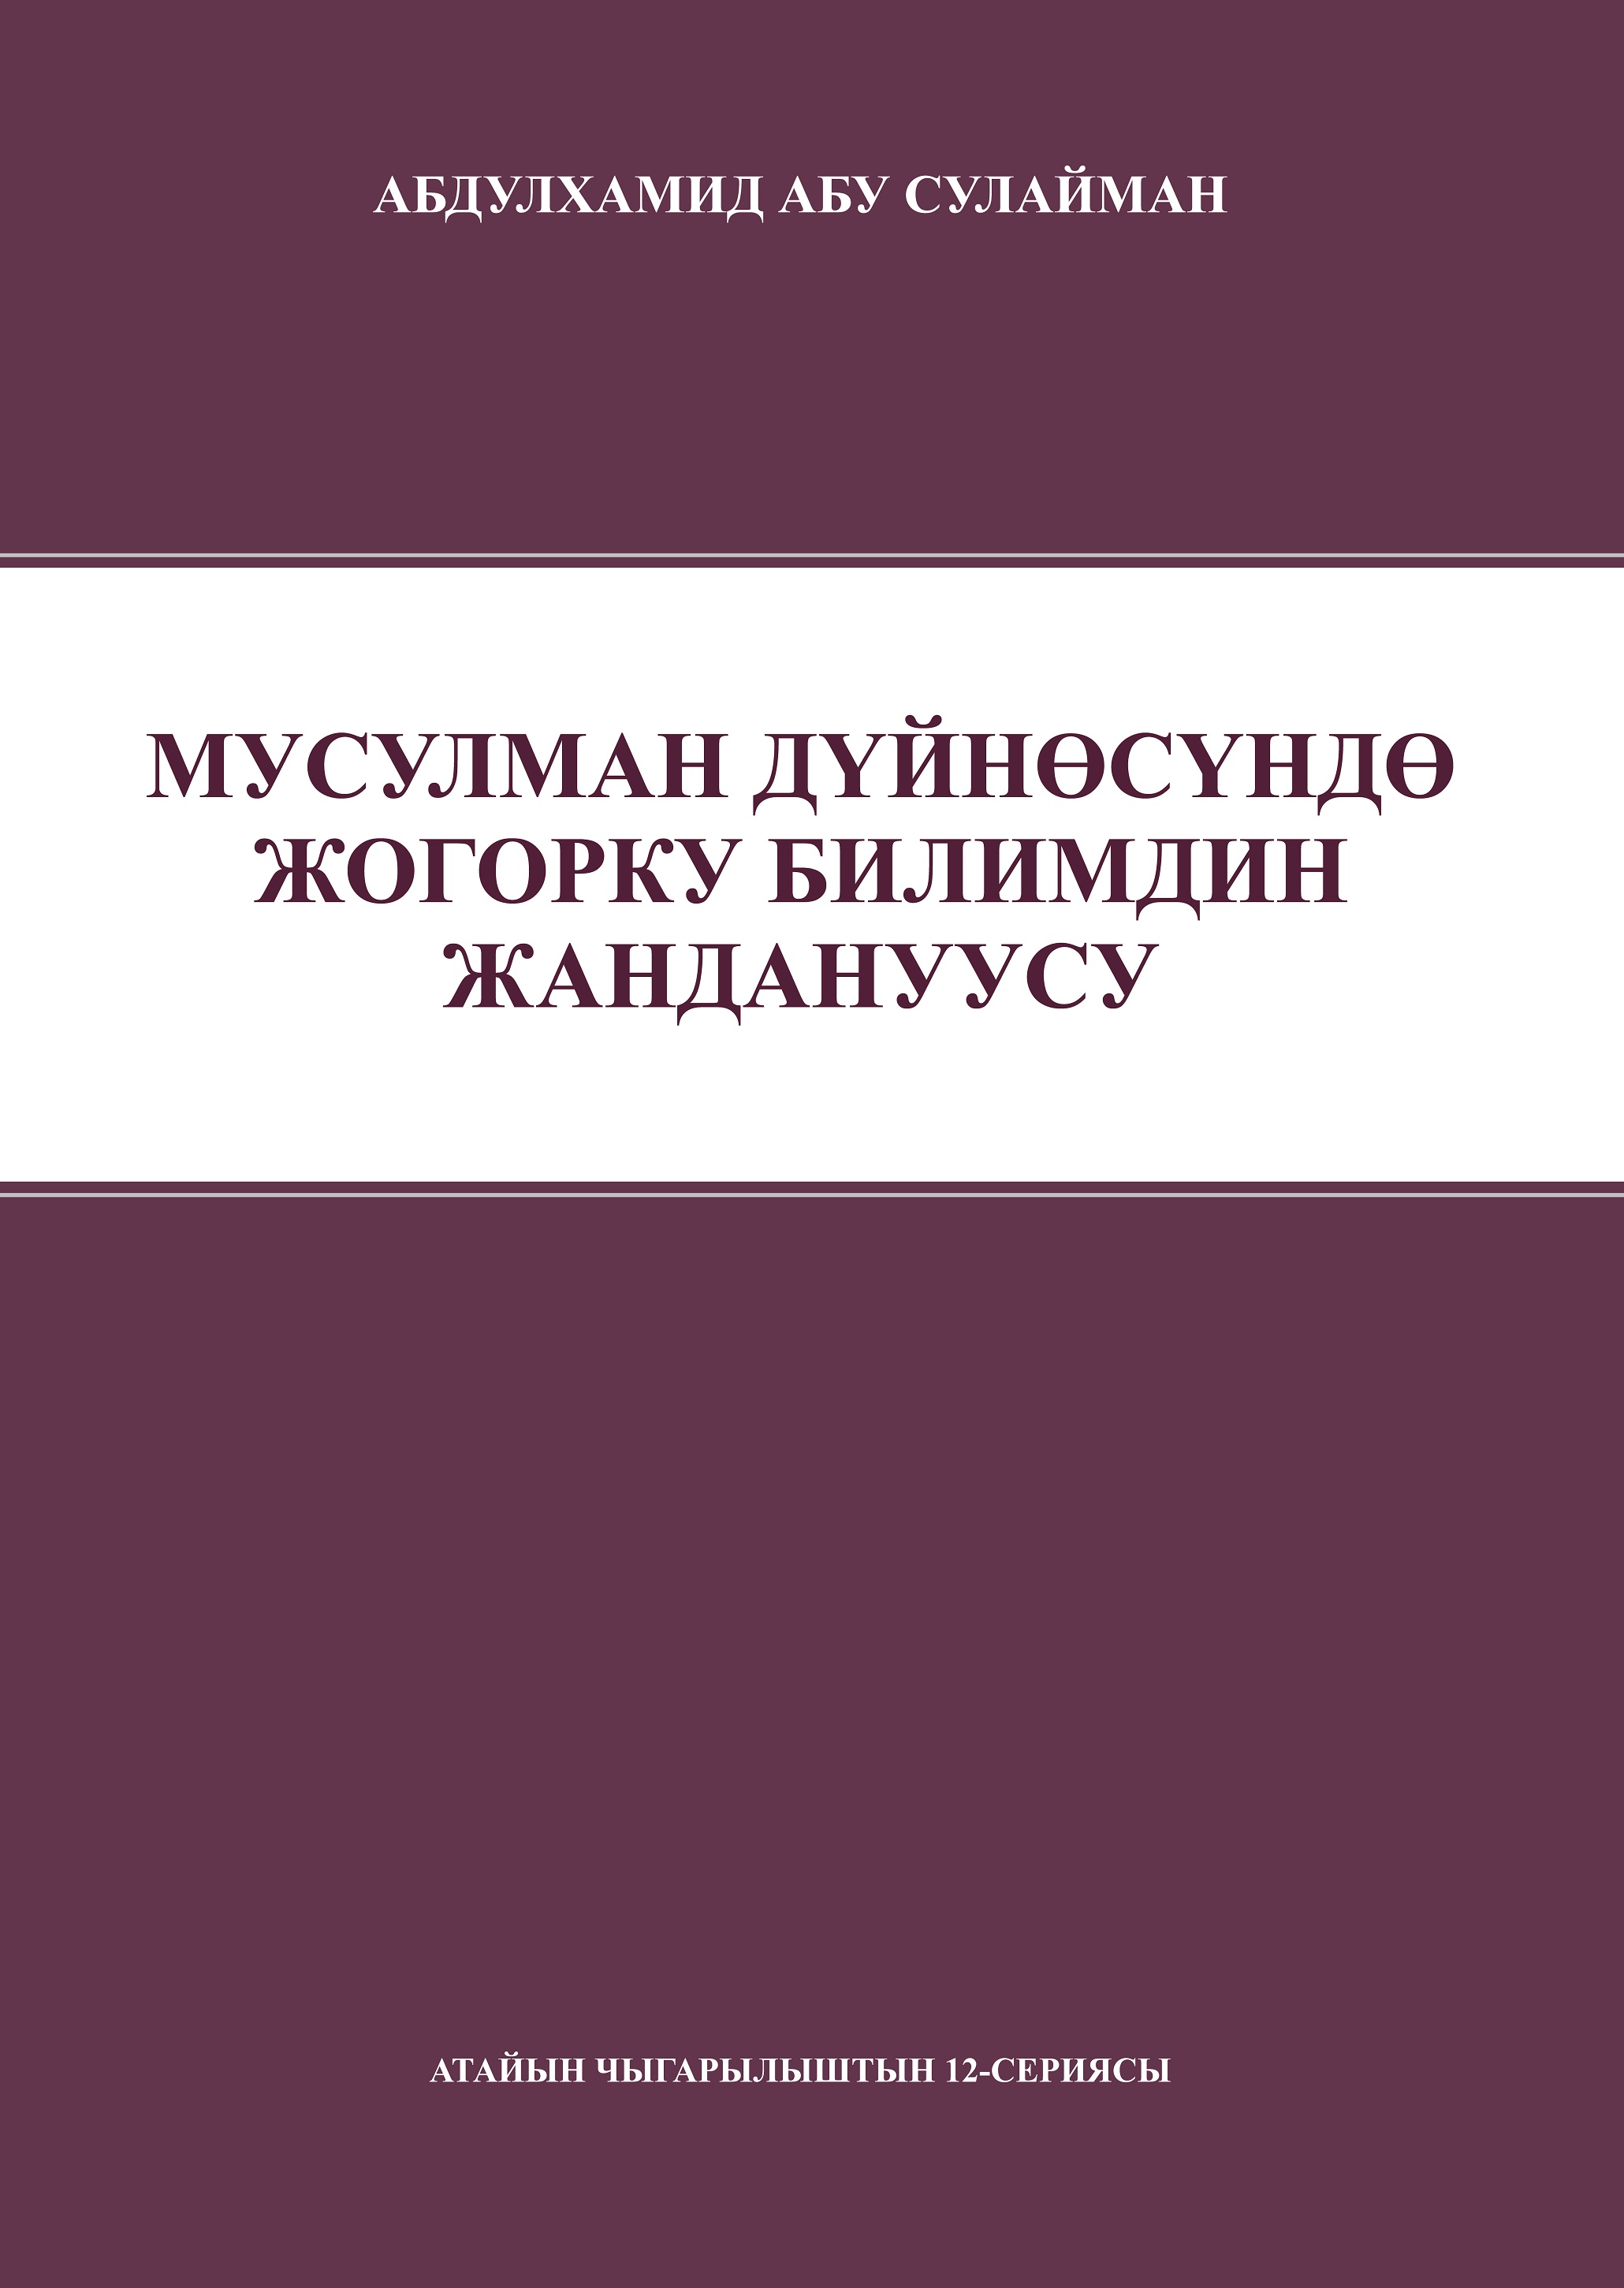 Kyrgyz: Мусулман дүйнөсүндө жогорку билимдин жандануусу (Revitalizing Higher Education in the Muslim World – Occasional Papers Series 12‎)